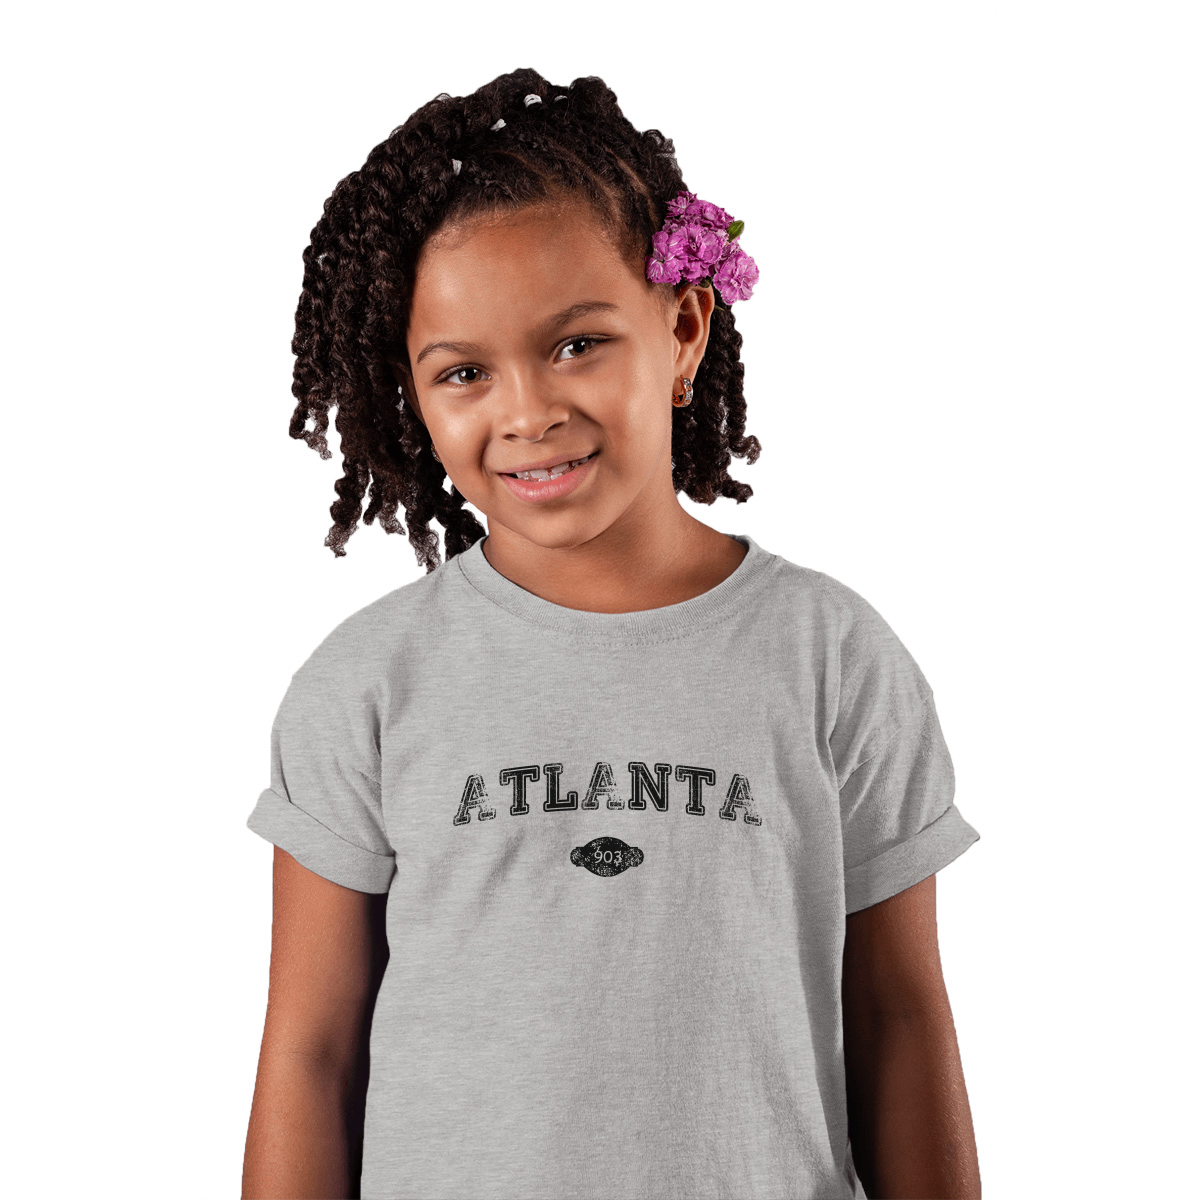 Atlanta 903 Represent Toddler T-shirt | Gray